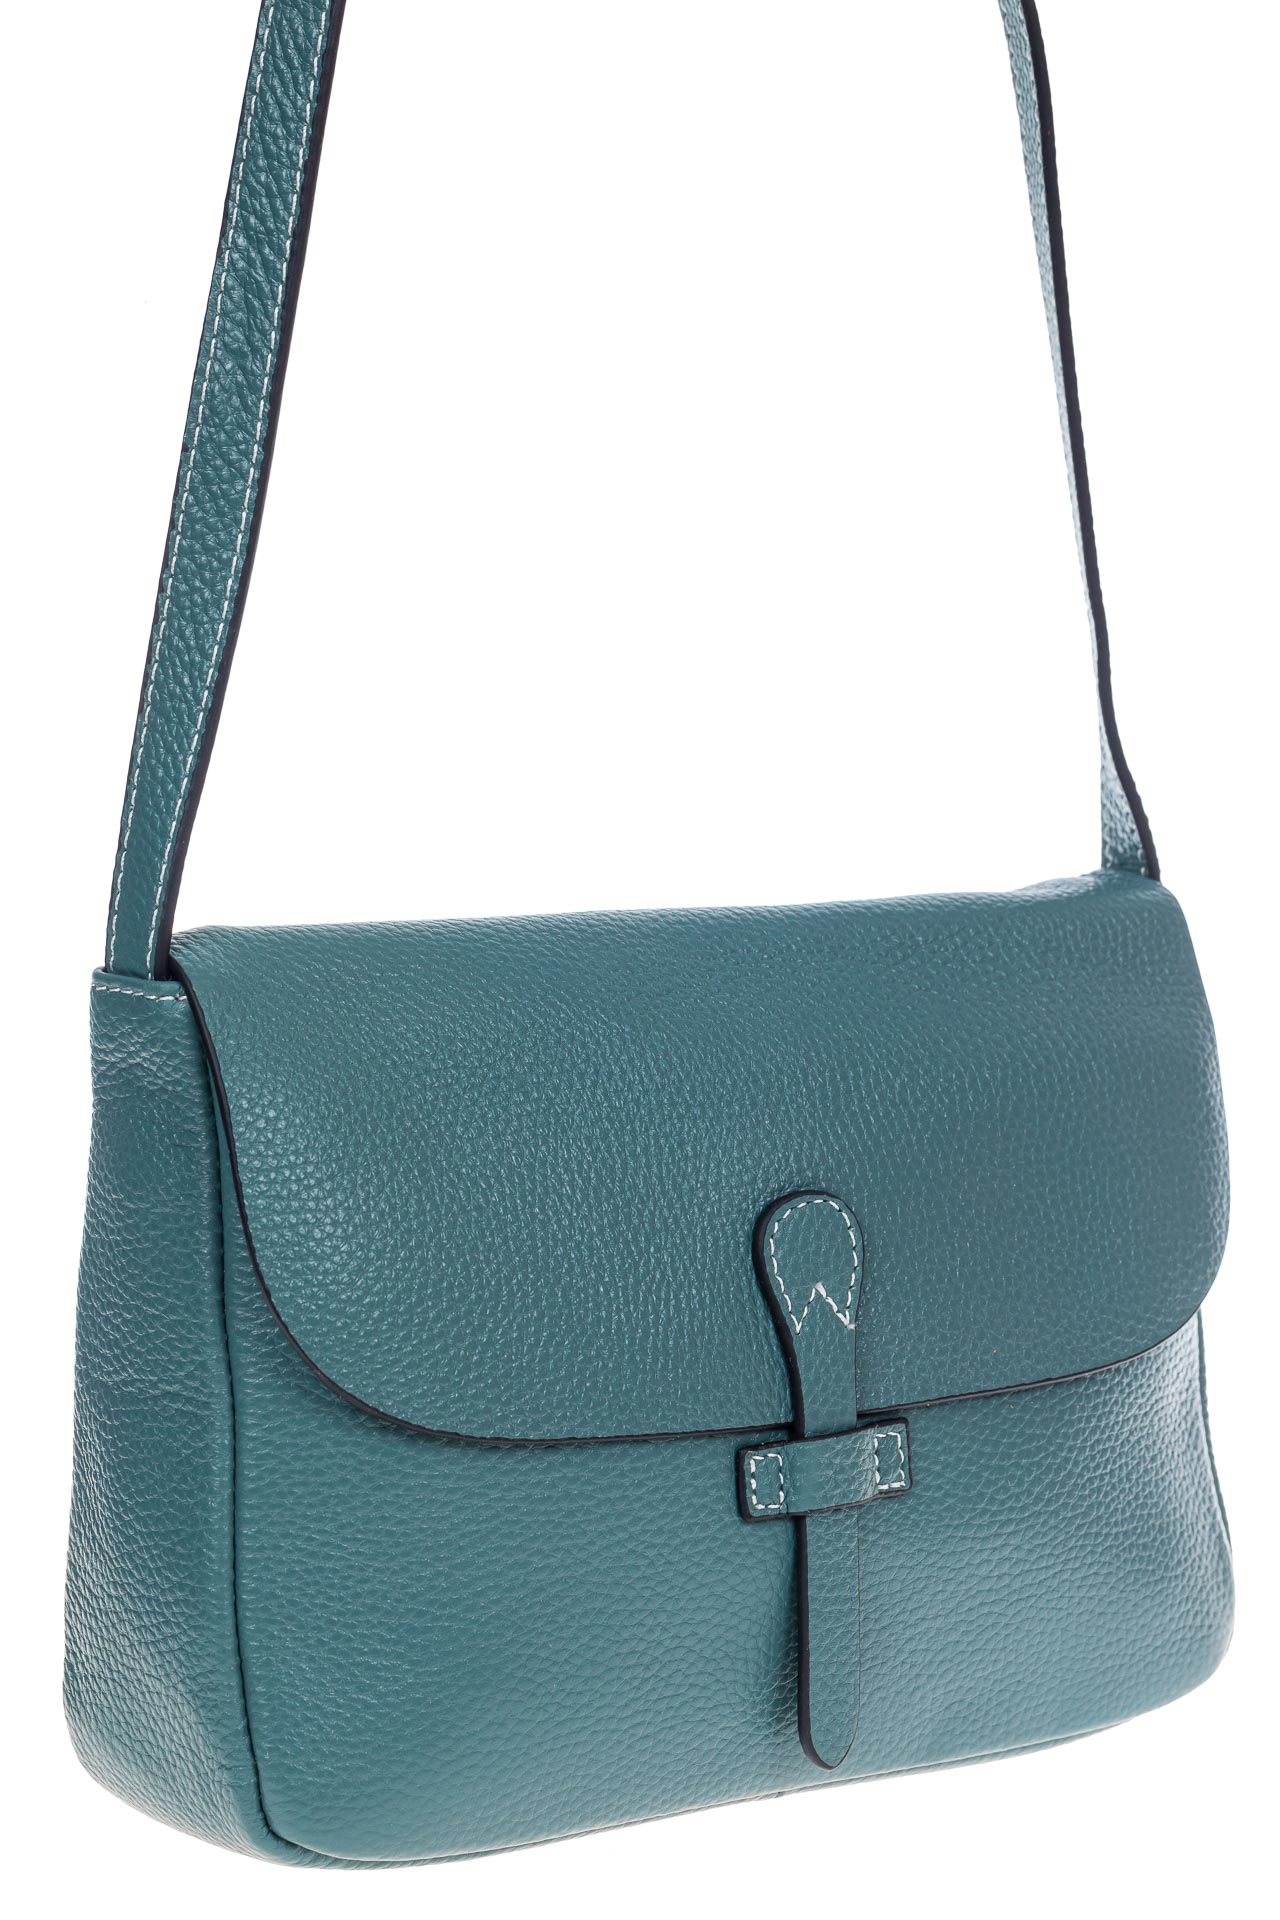 Женская сумка-мессенджер из натуральной кожи, цвет серая бирюза